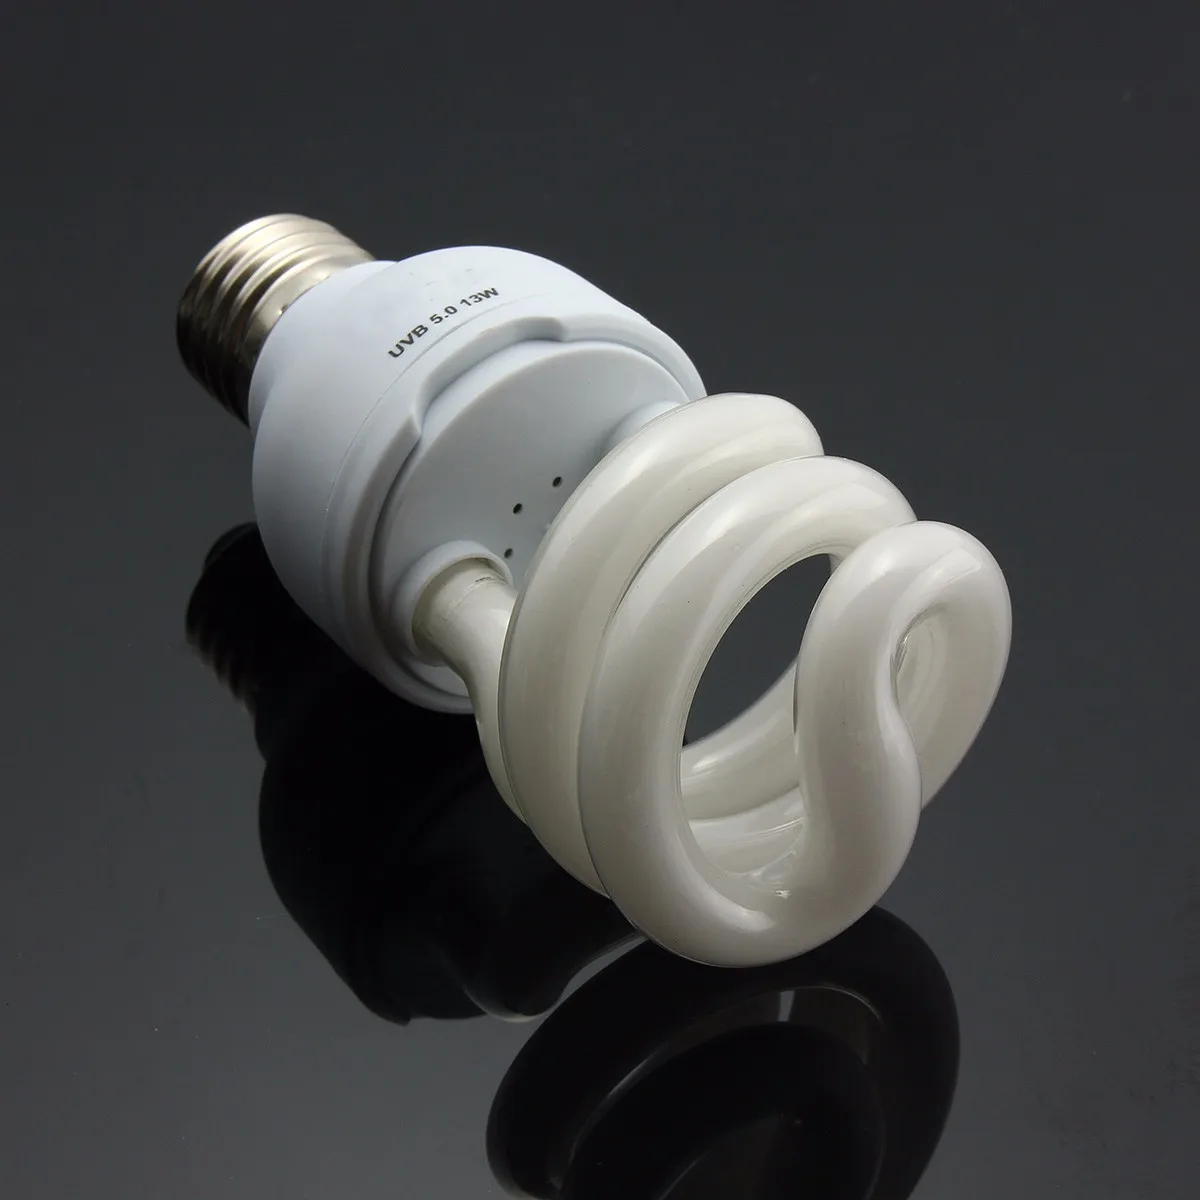 Лампа дневного света AC220V 13 W ультрафиолетового Pet свет для рептилии Glow теплоизлучатель лампы для Виварий Террариум черепаха рыбы амфибии